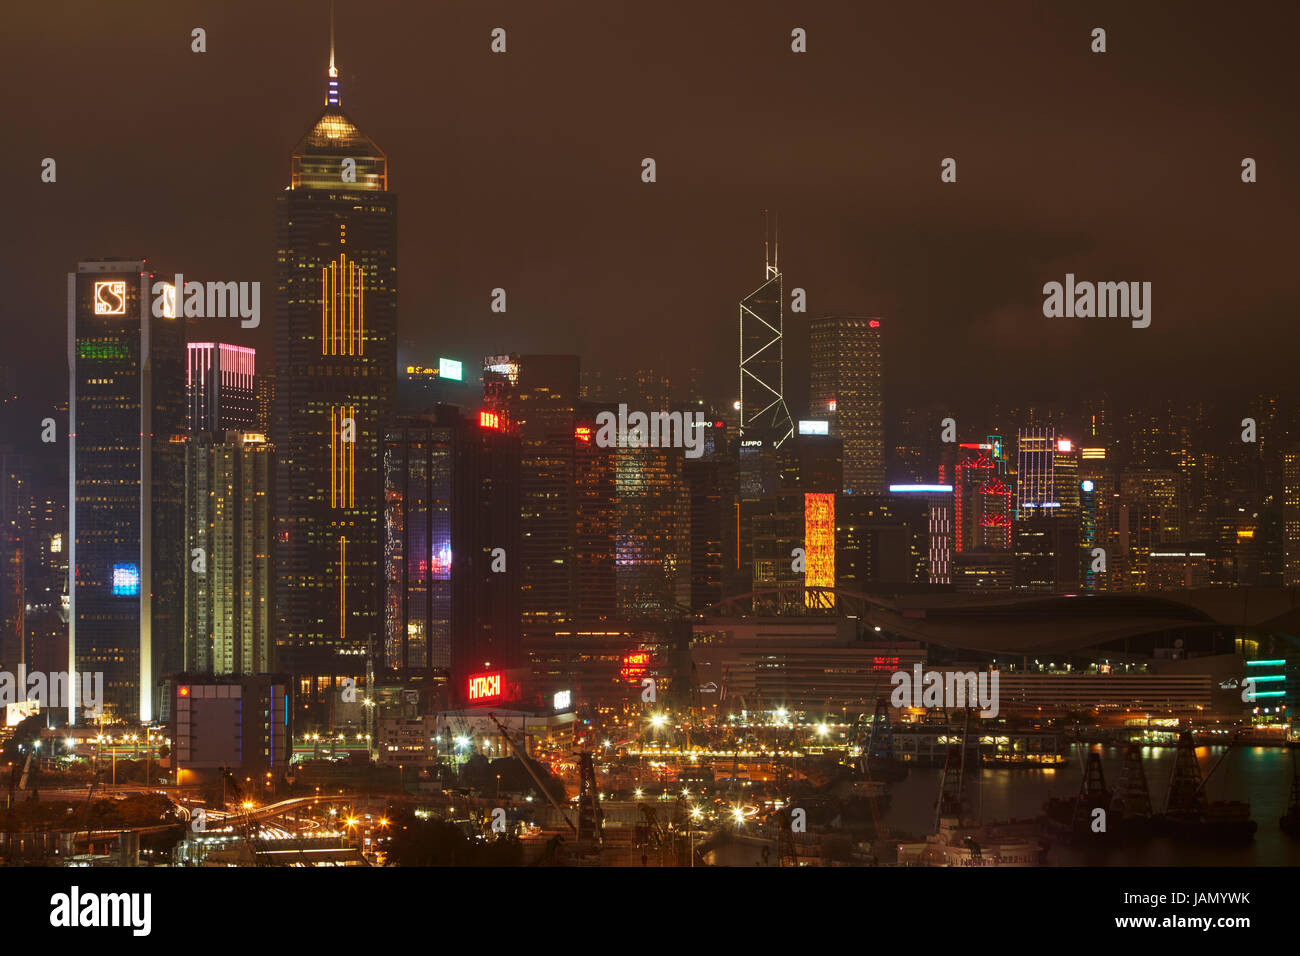 High rise buildings at night, Hong Kong Island, Hong Kong, China Stock Photo